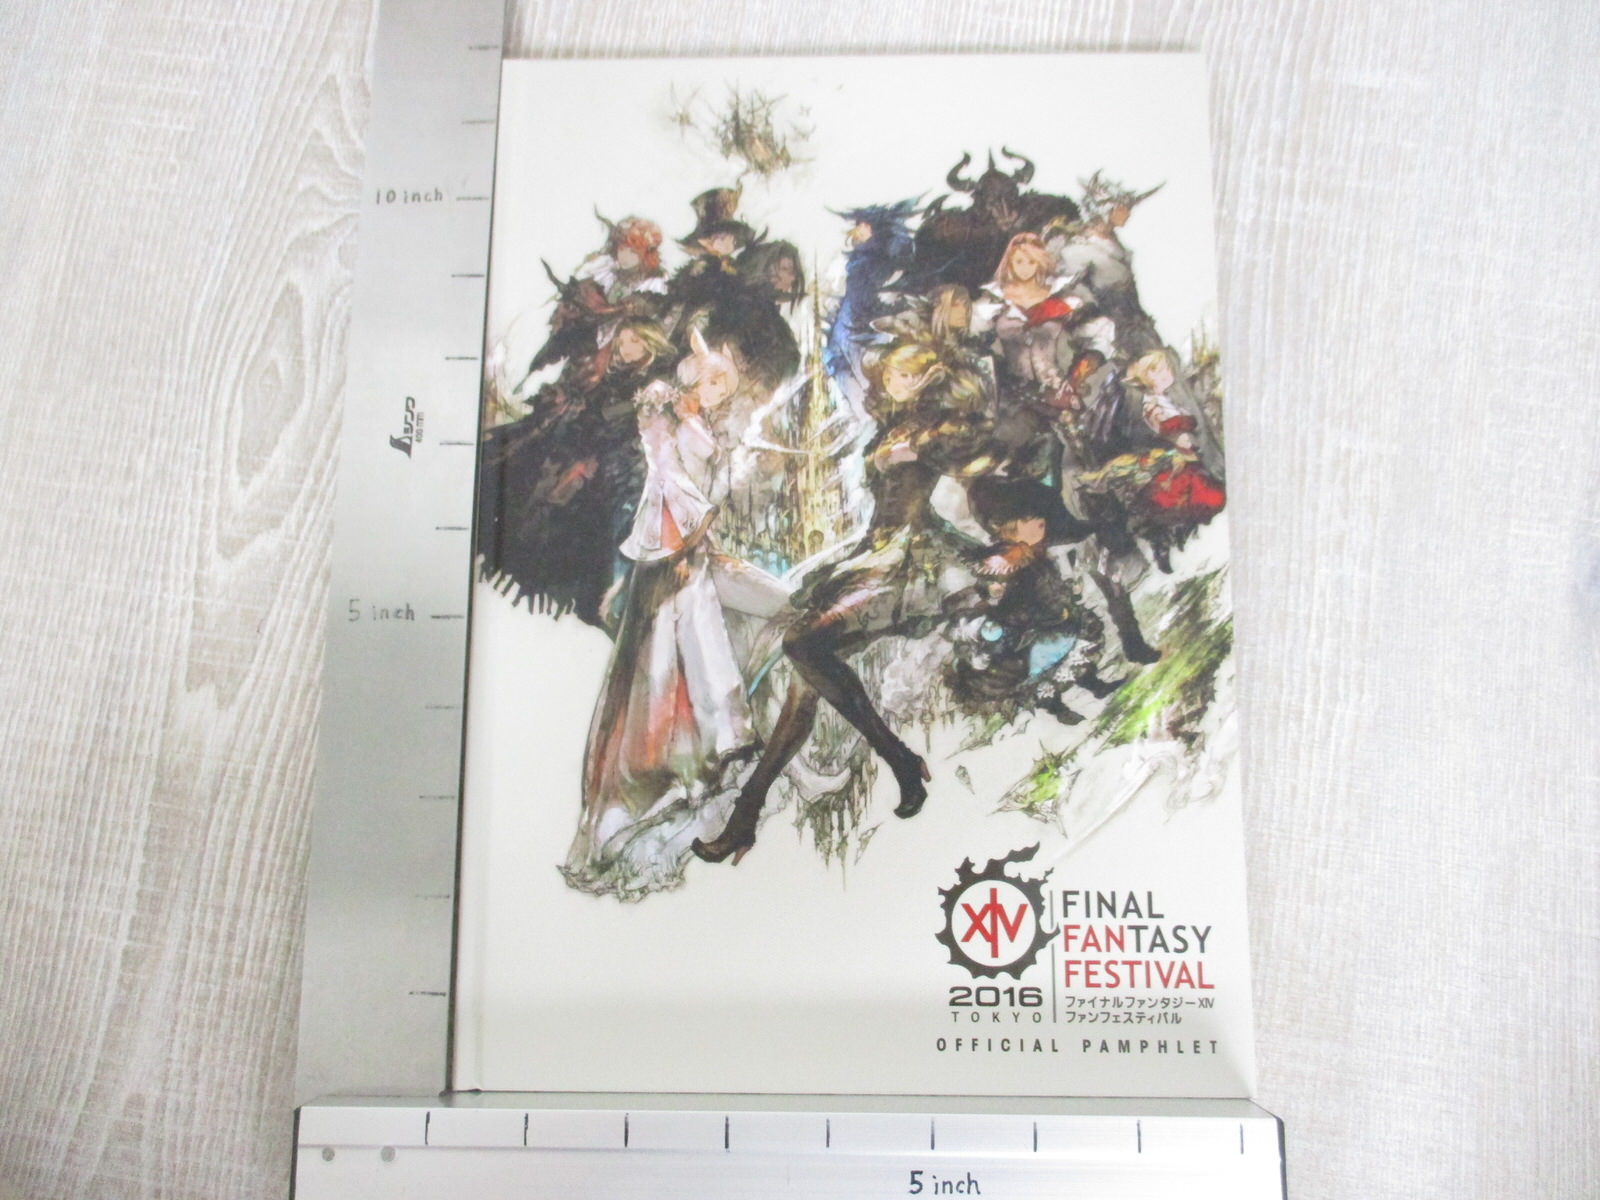 Final Fantasy Xiv 14 Festival Art Works 2016 Tokyo Ltd Fan Book Ebay